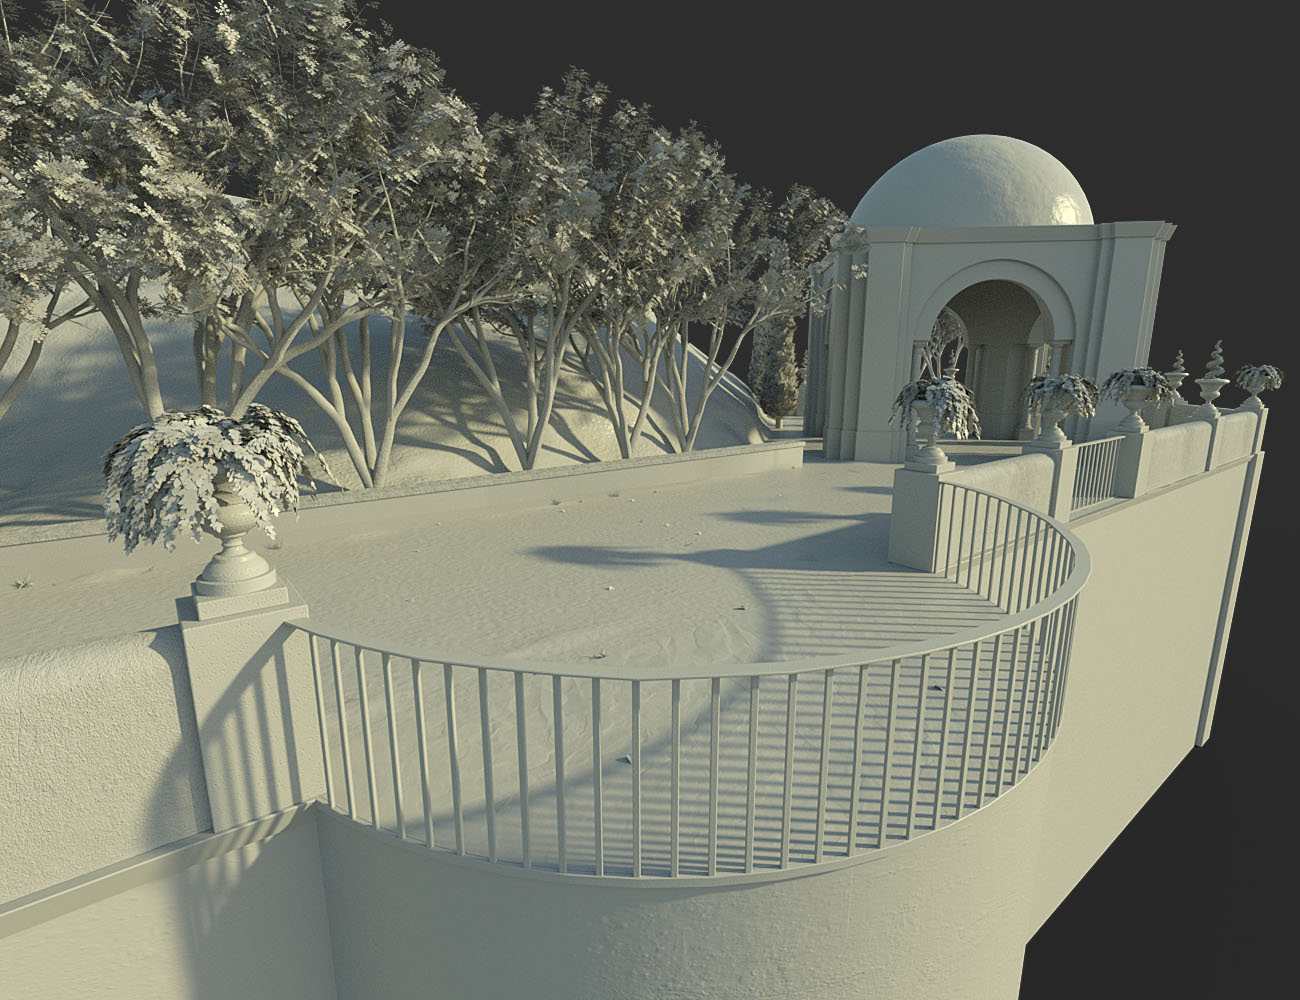 Mountaintop Gazebo and Balcony by: bitwelder, 3D Models by Daz 3D